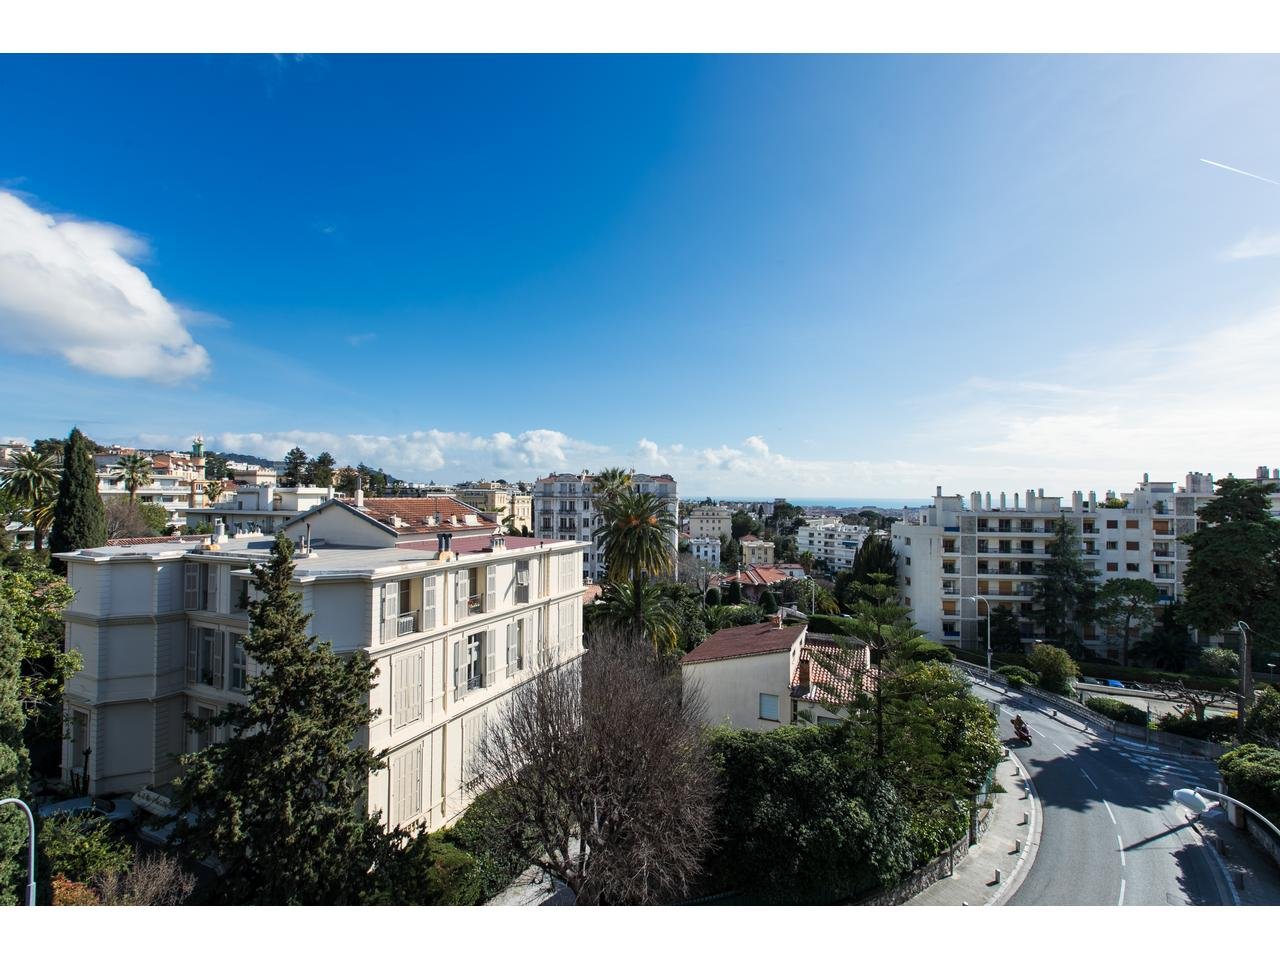 Vente Appartement 107m² 4 Pièces à Nice (06000) - Nice Vue Mer Immobilier